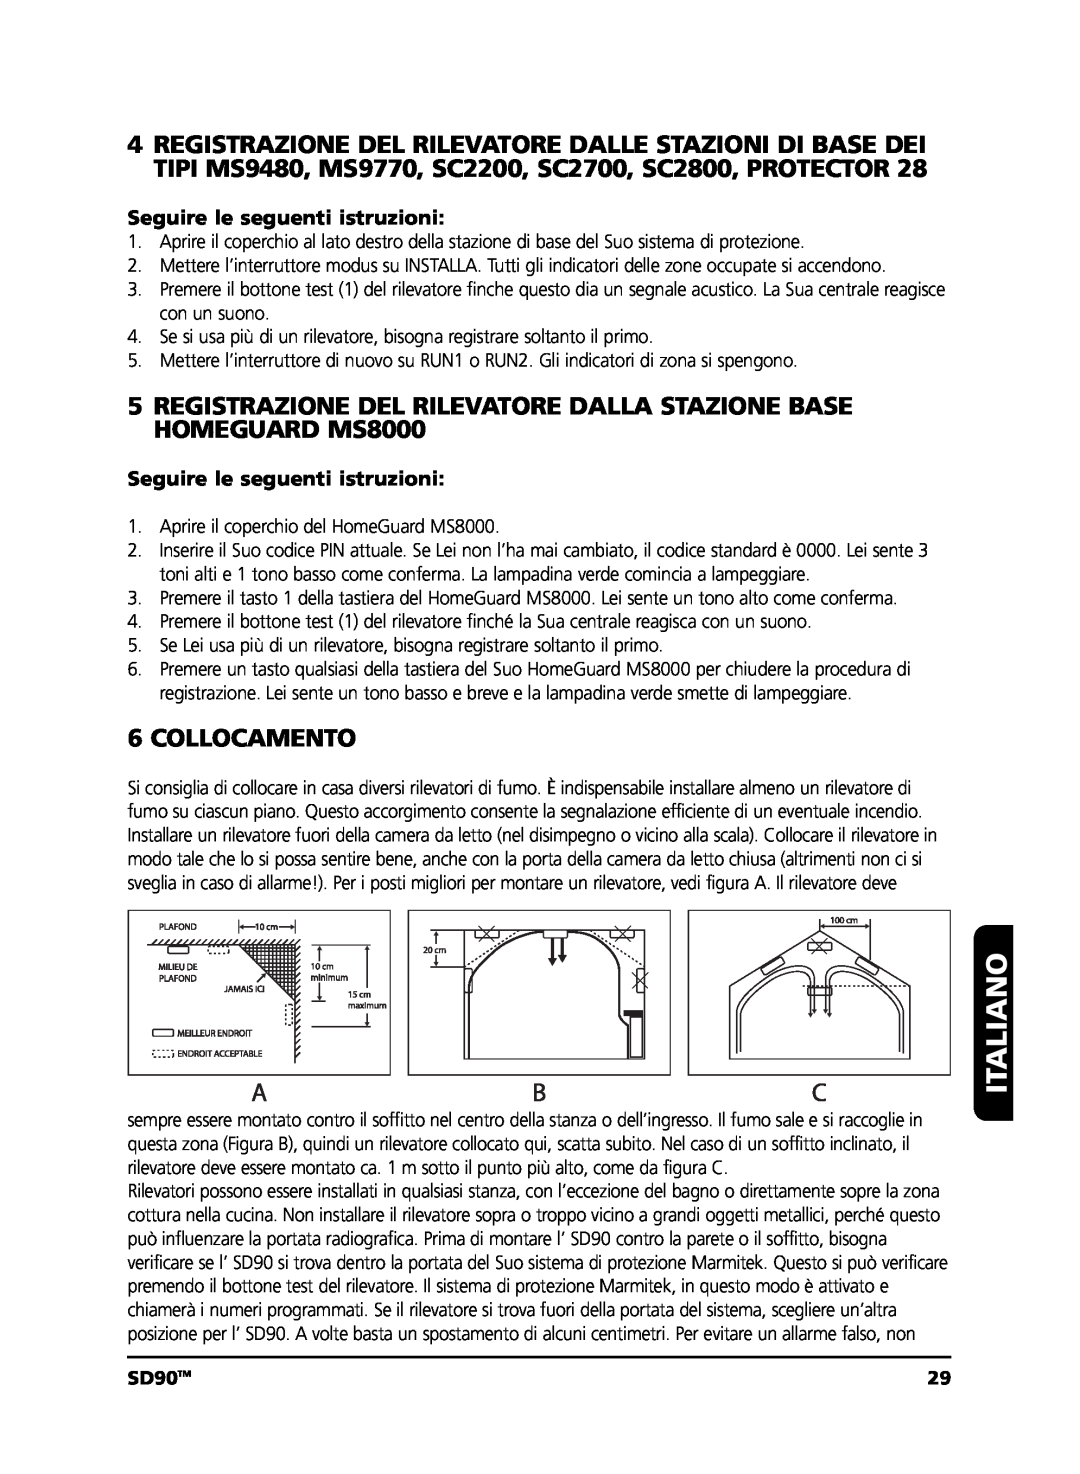 Marmitek user manual Collocamento, Italiano, SD90TM 